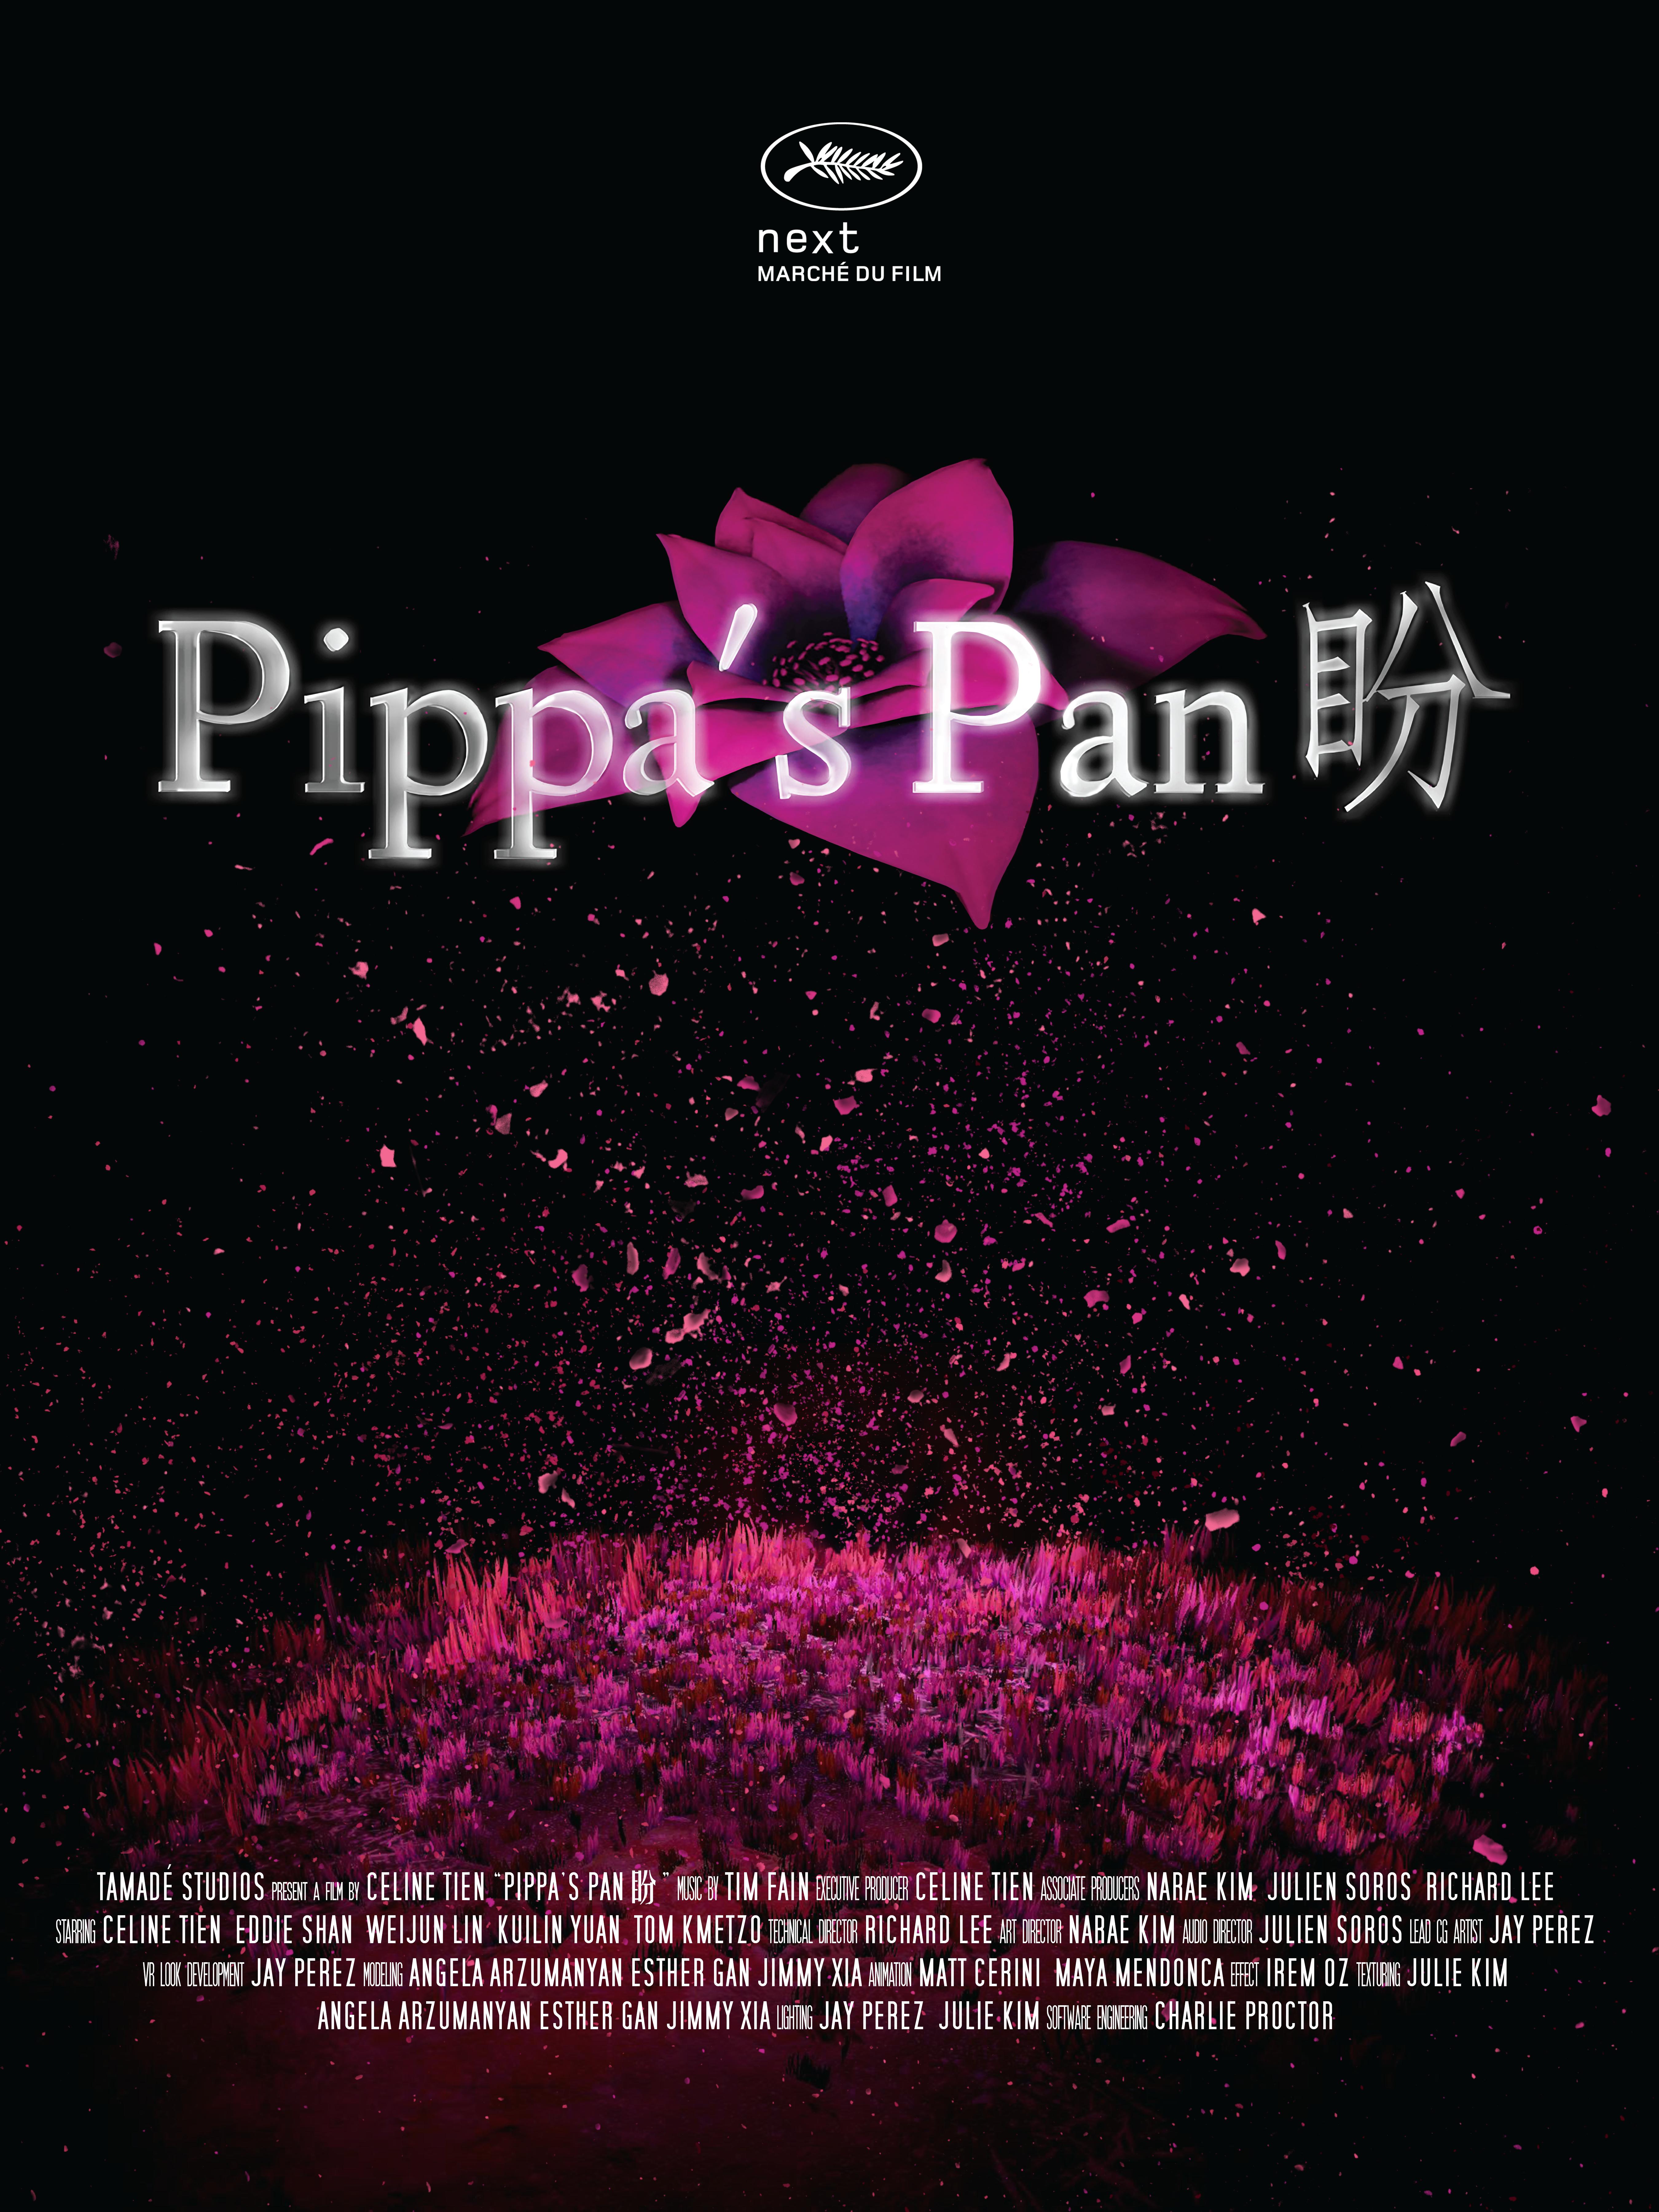 Pippa's Pan